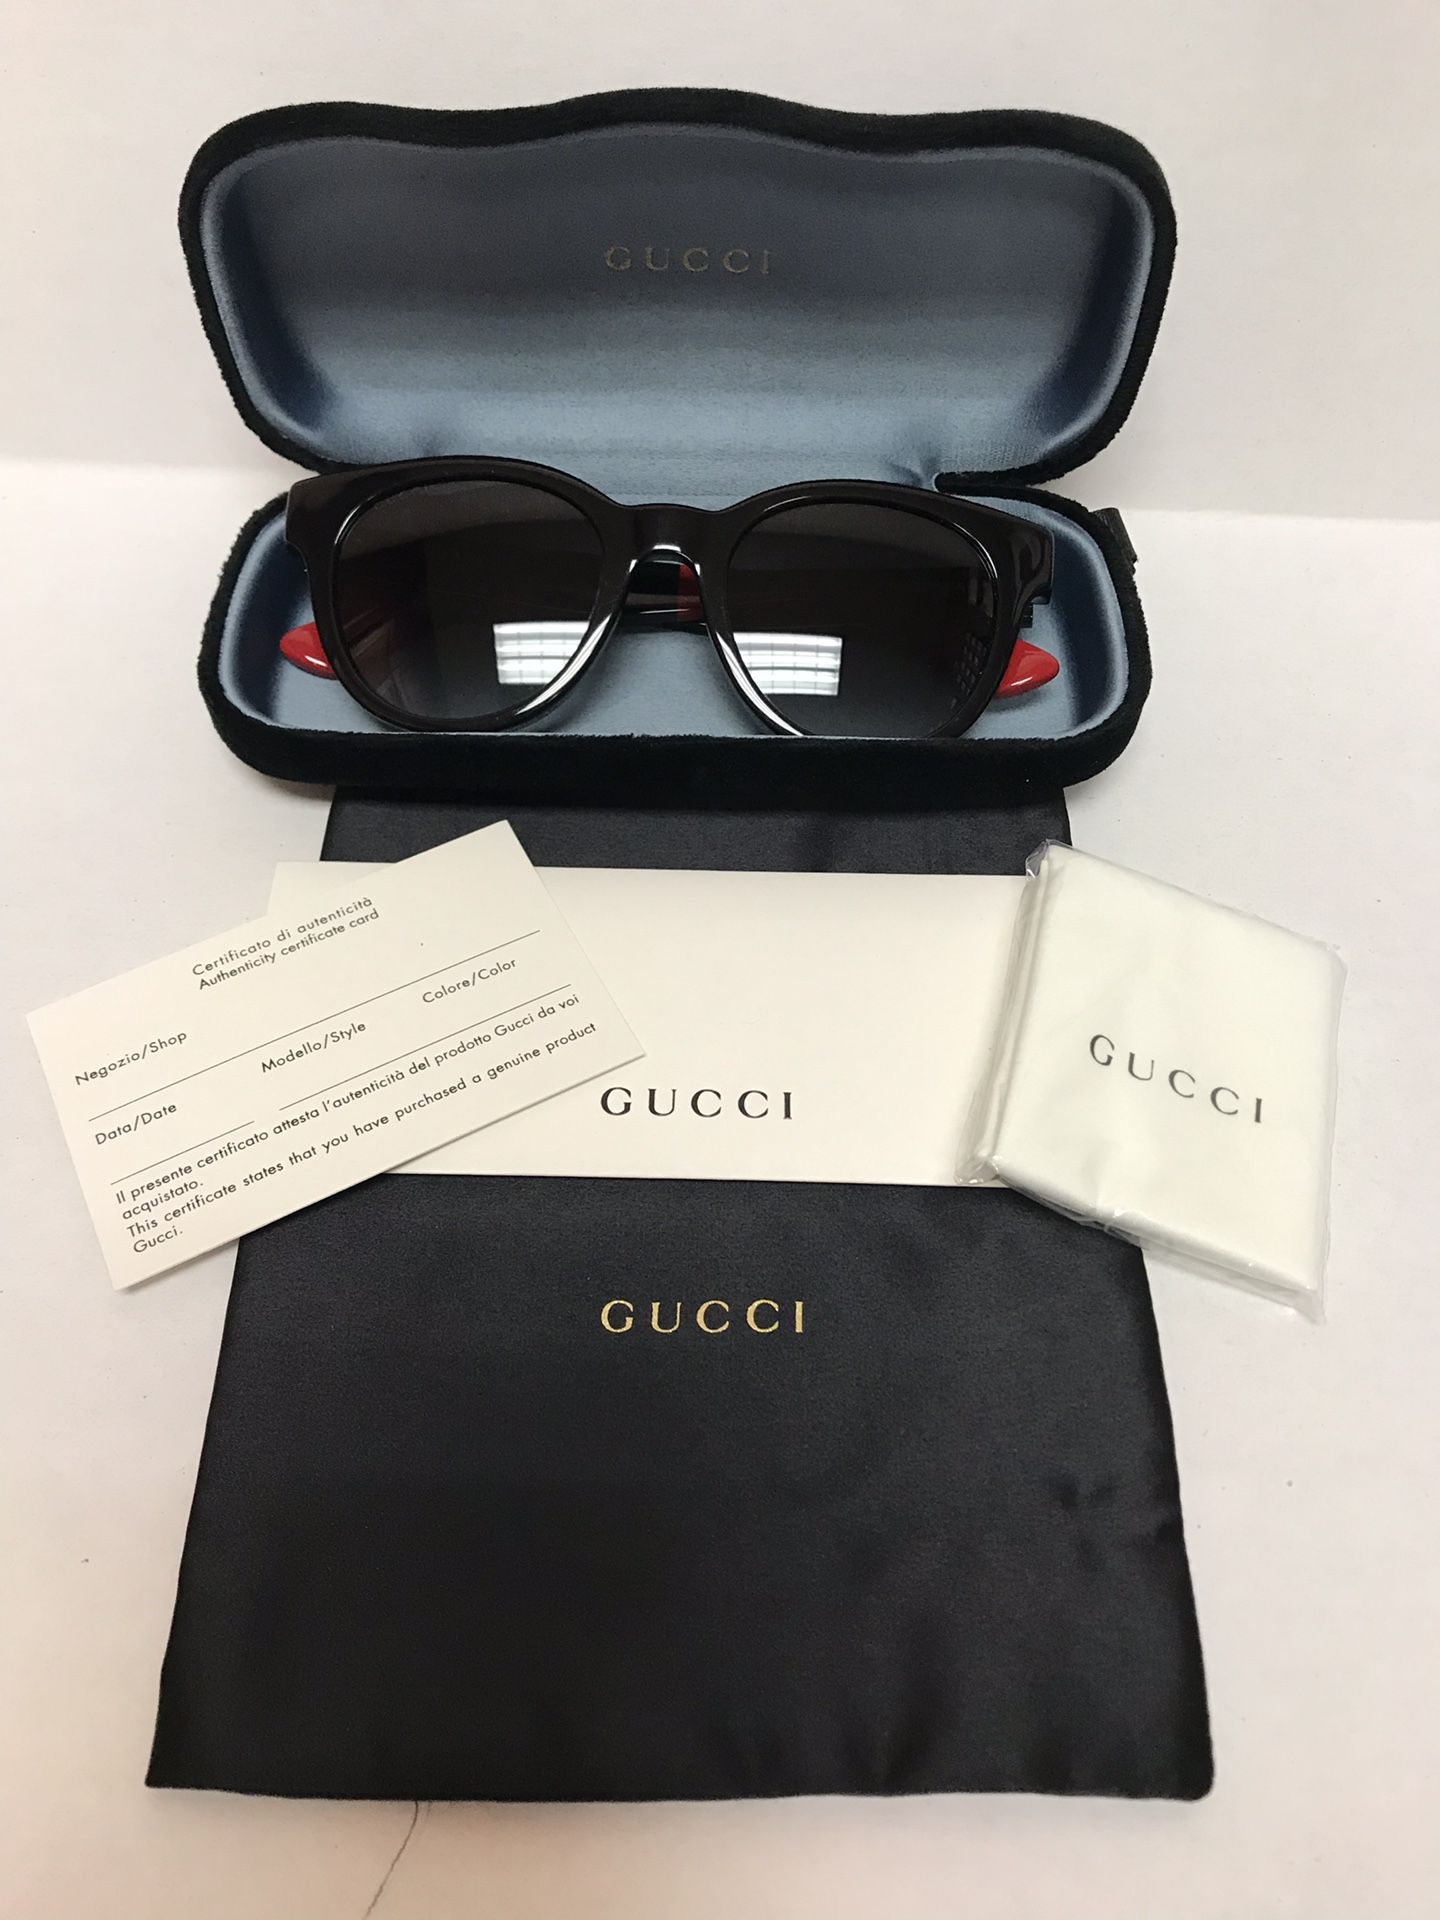 Gucci Authentic Sunglasses for Sale in Miami, FL - OfferUp